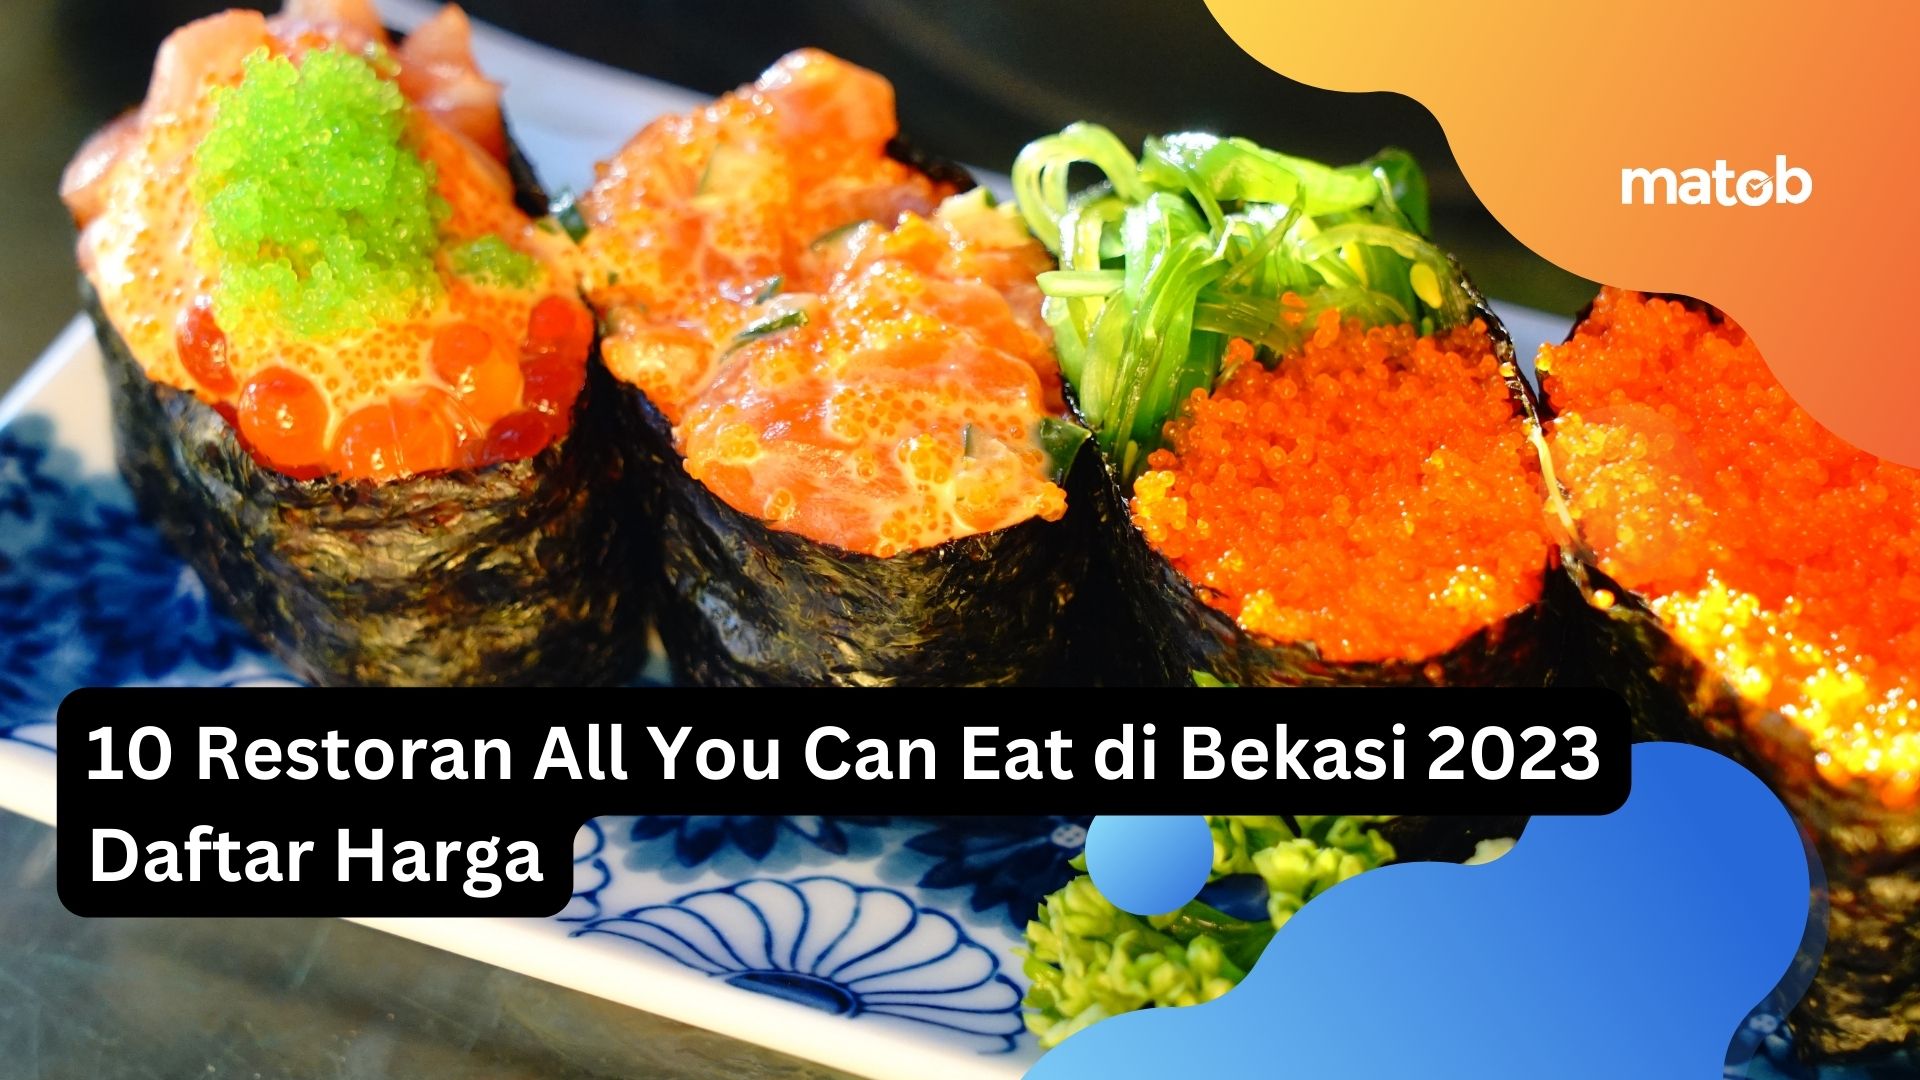 10 Restoran All You Can Eat di Bekasi 2023 Daftar Harga